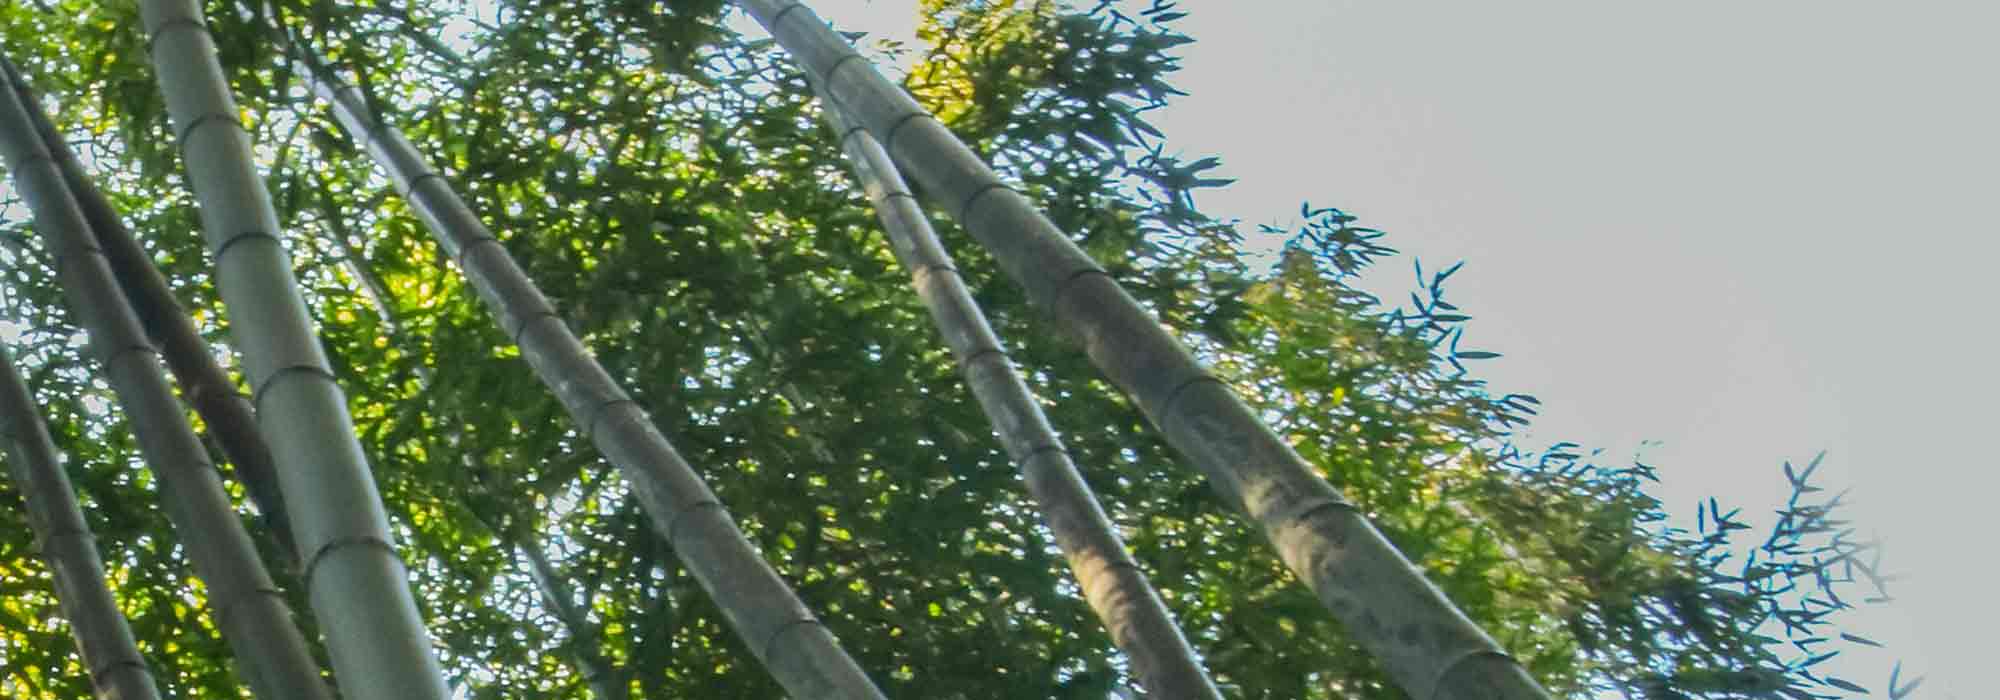 Les bambous géants